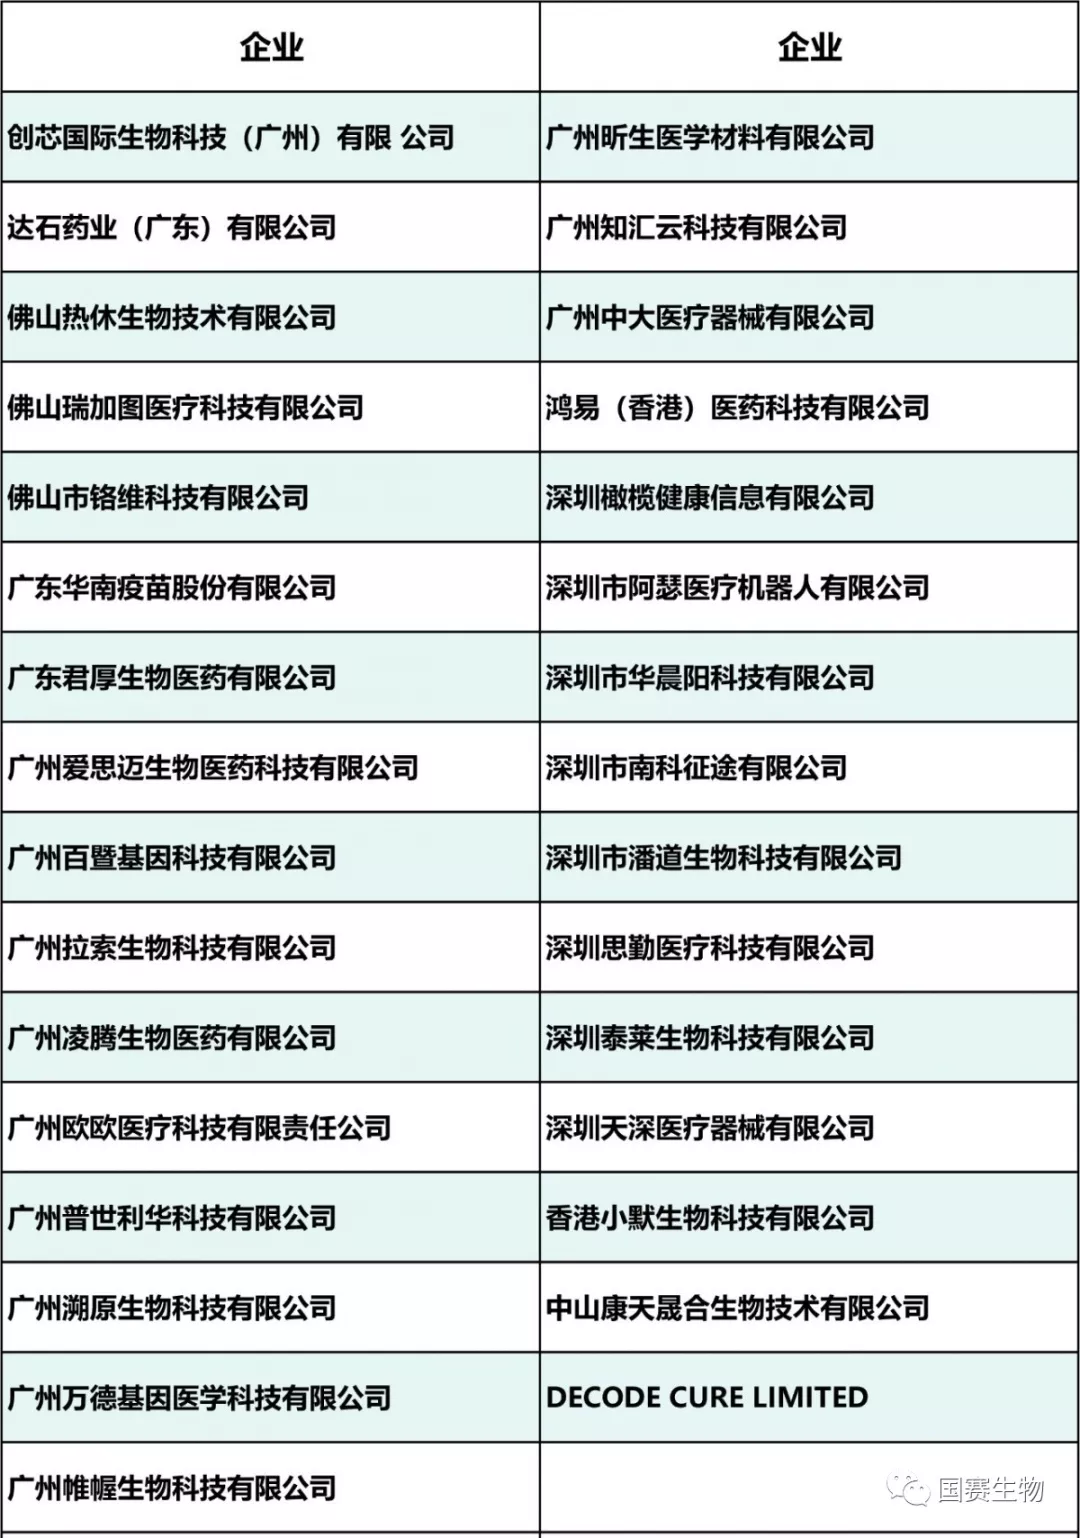 广东企业列表